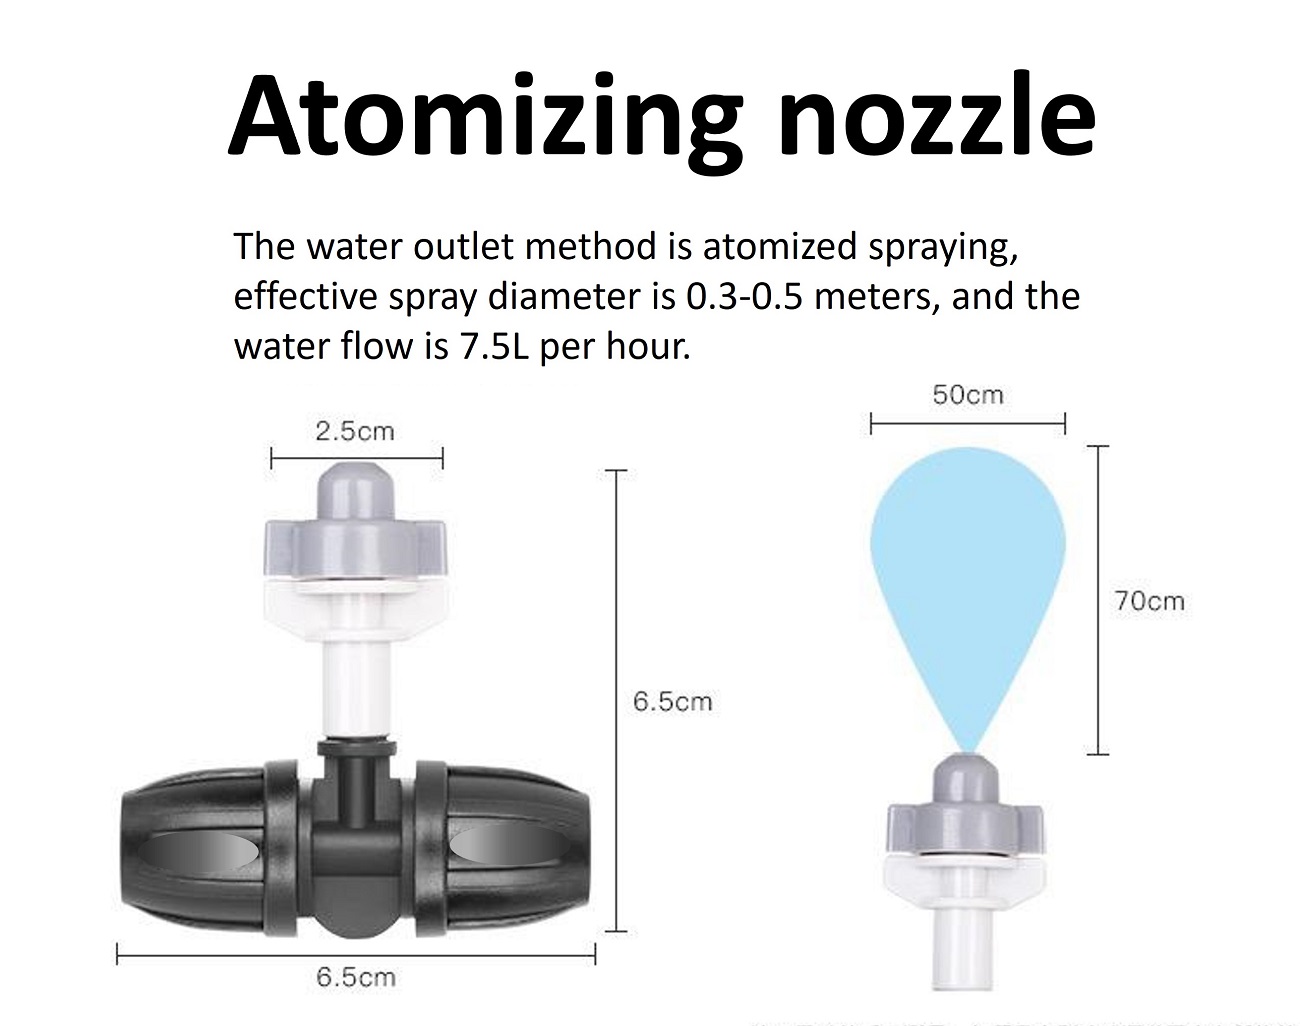 Atomizing nozzle2